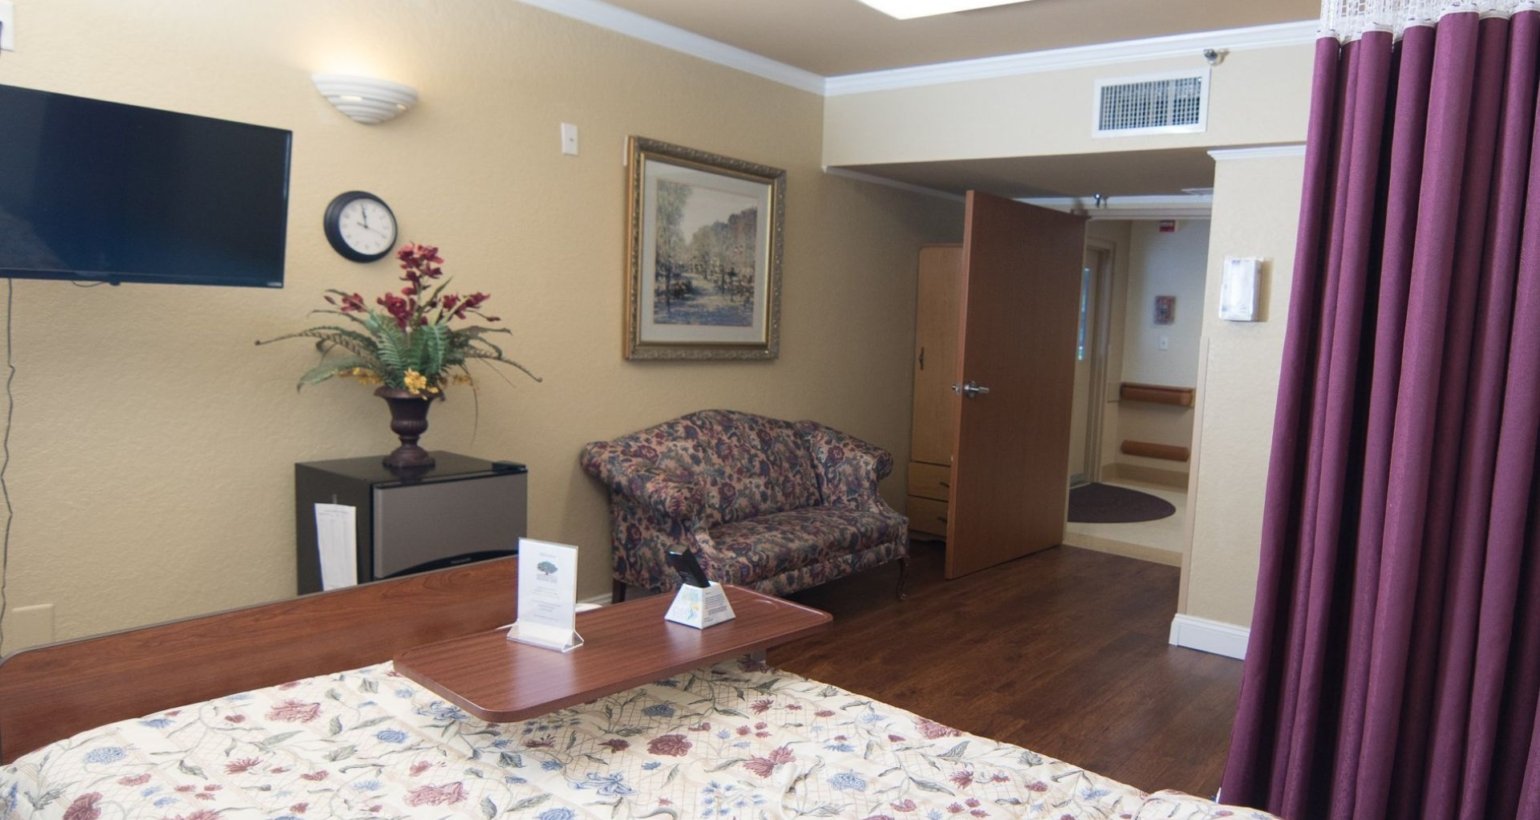 Bedroom in Brooksville healthcare center